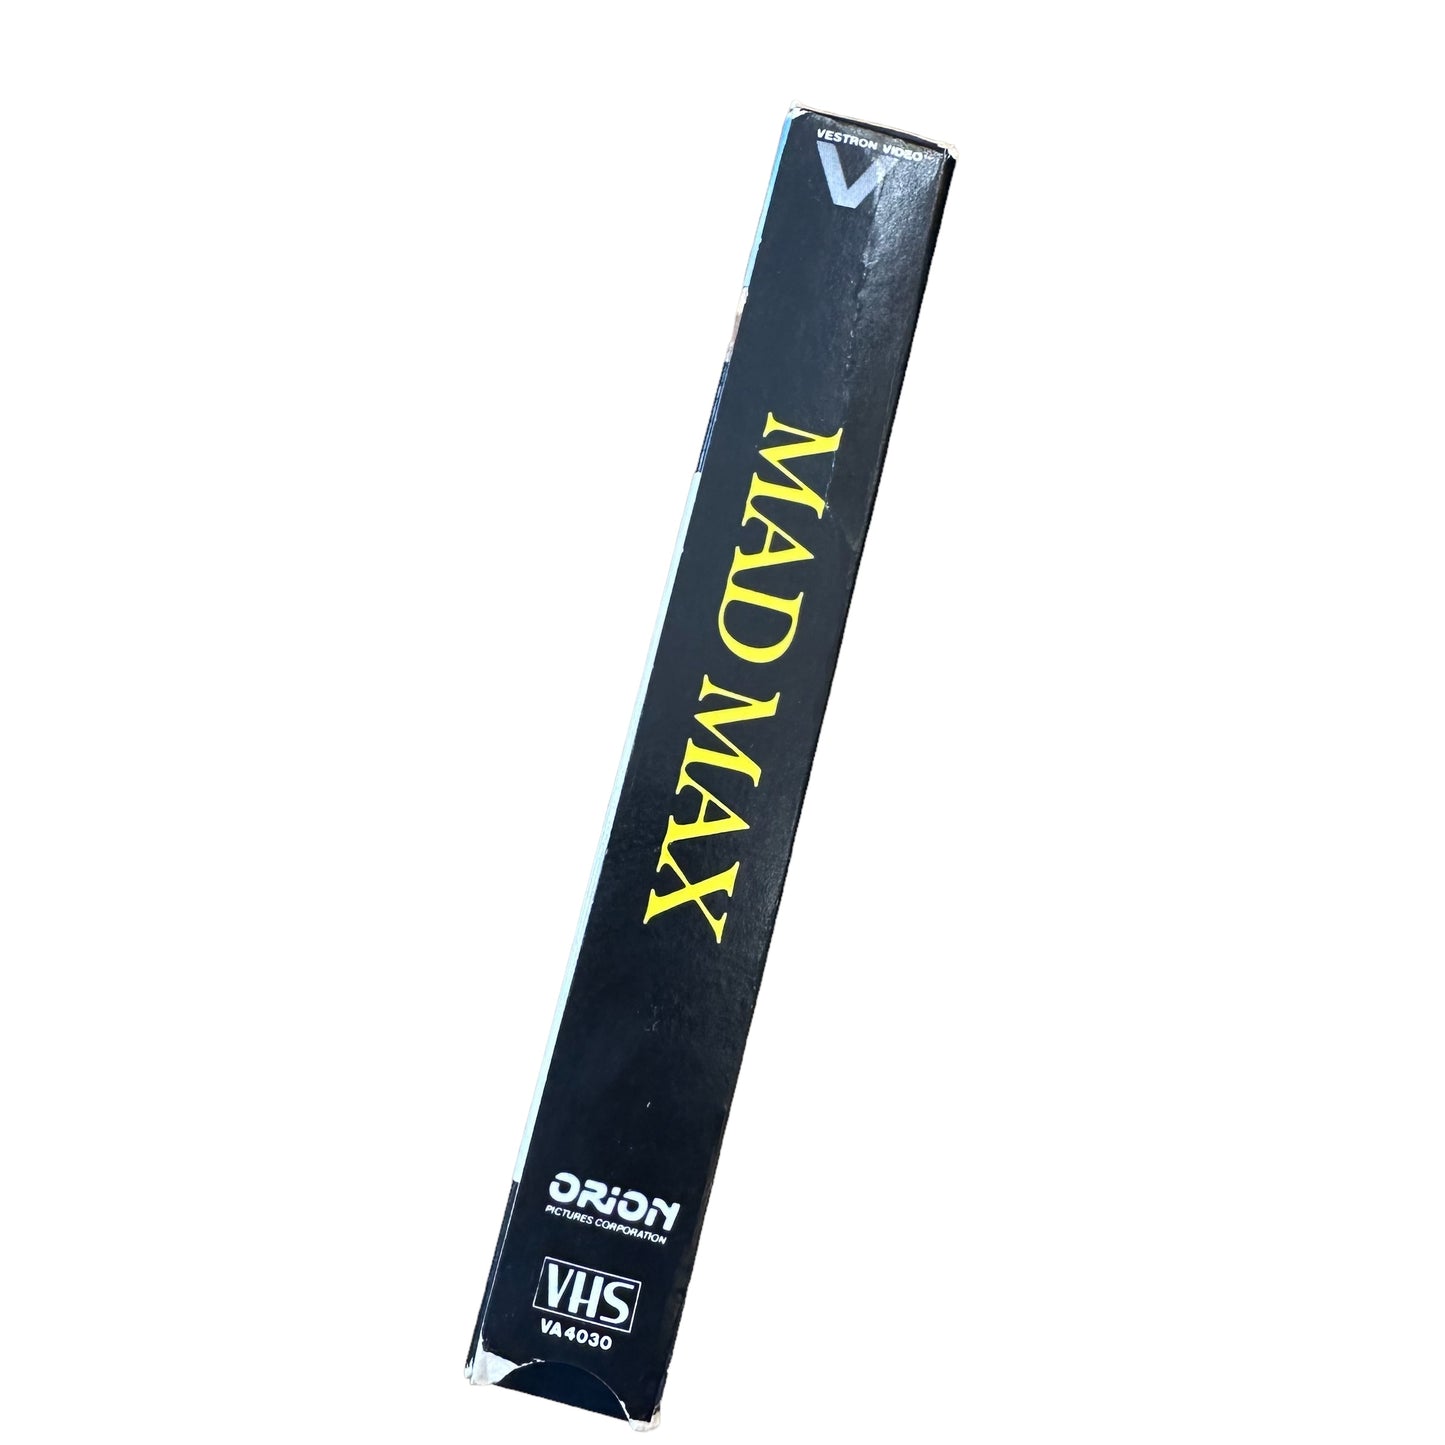 VHS ビデオテープ 輸入版 マッド・マックス MAD MAX 海外版 USA アメリカ ヴィンテージ ビデオ 紙ジャケ